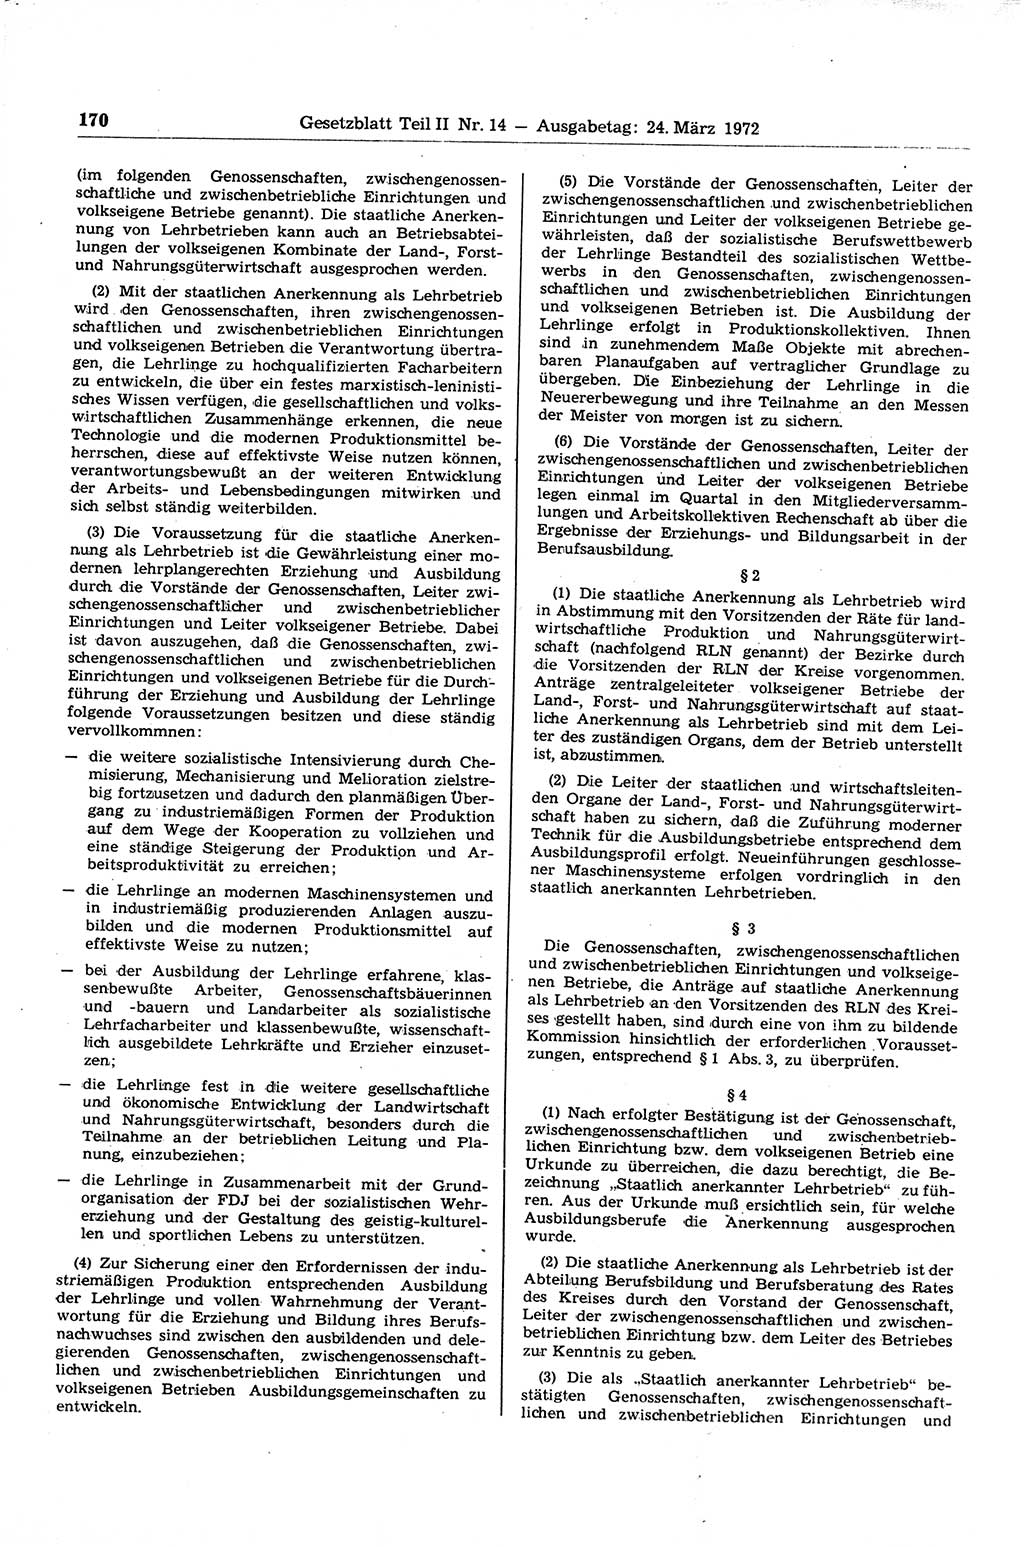 Gesetzblatt (GBl.) der Deutschen Demokratischen Republik (DDR) Teil ⅠⅠ 1972, Seite 170 (GBl. DDR ⅠⅠ 1972, S. 170)